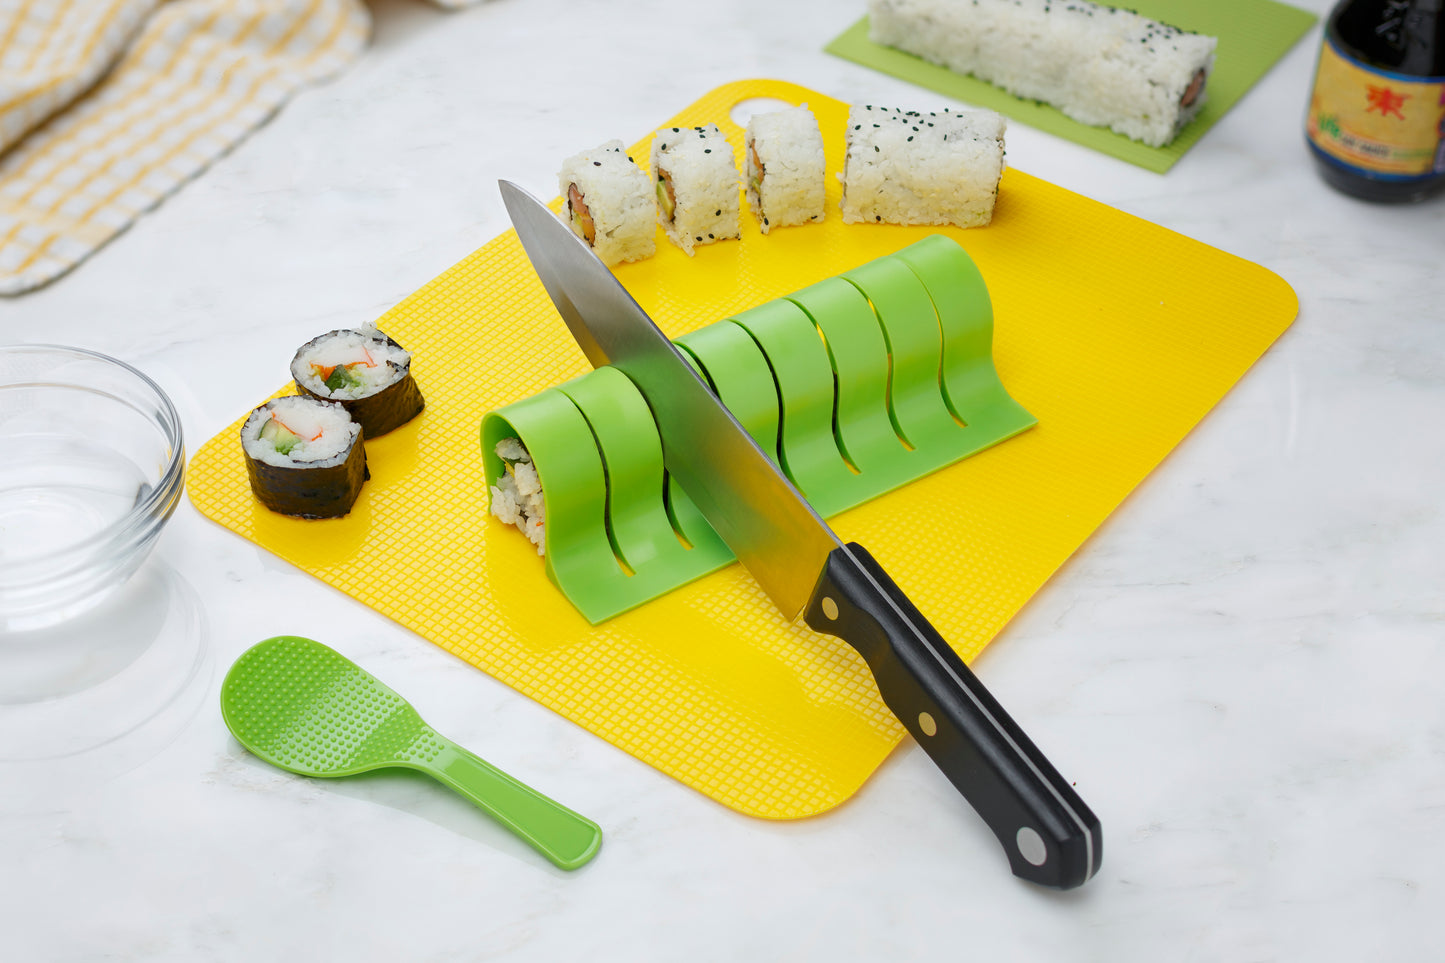 Sushi Making Kit - Size 9"x9.5"